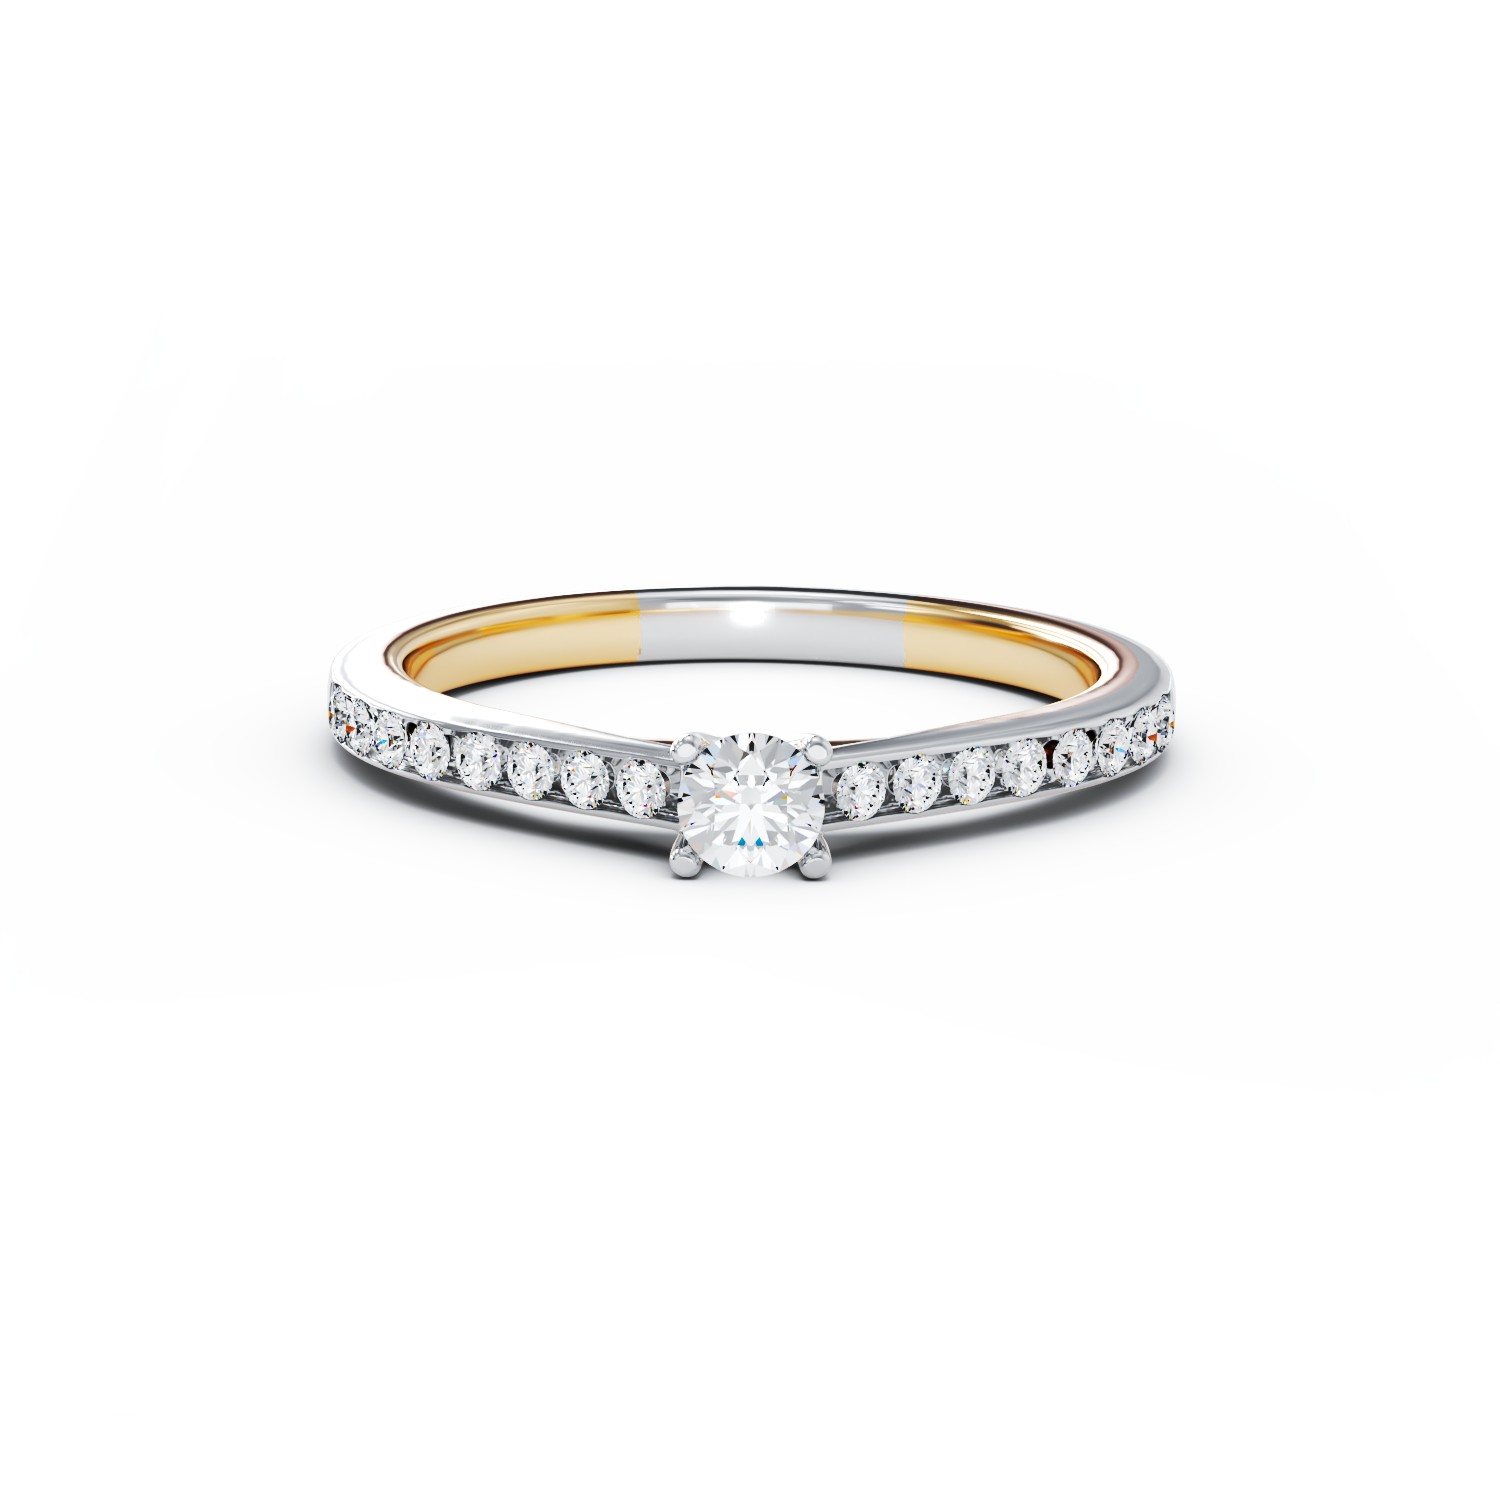 Eljegyzési gyűrű 18K-os fehér aranyból 0,15ct gyémánttal és 0,16ct gyémánttal. Gramm: 3,54